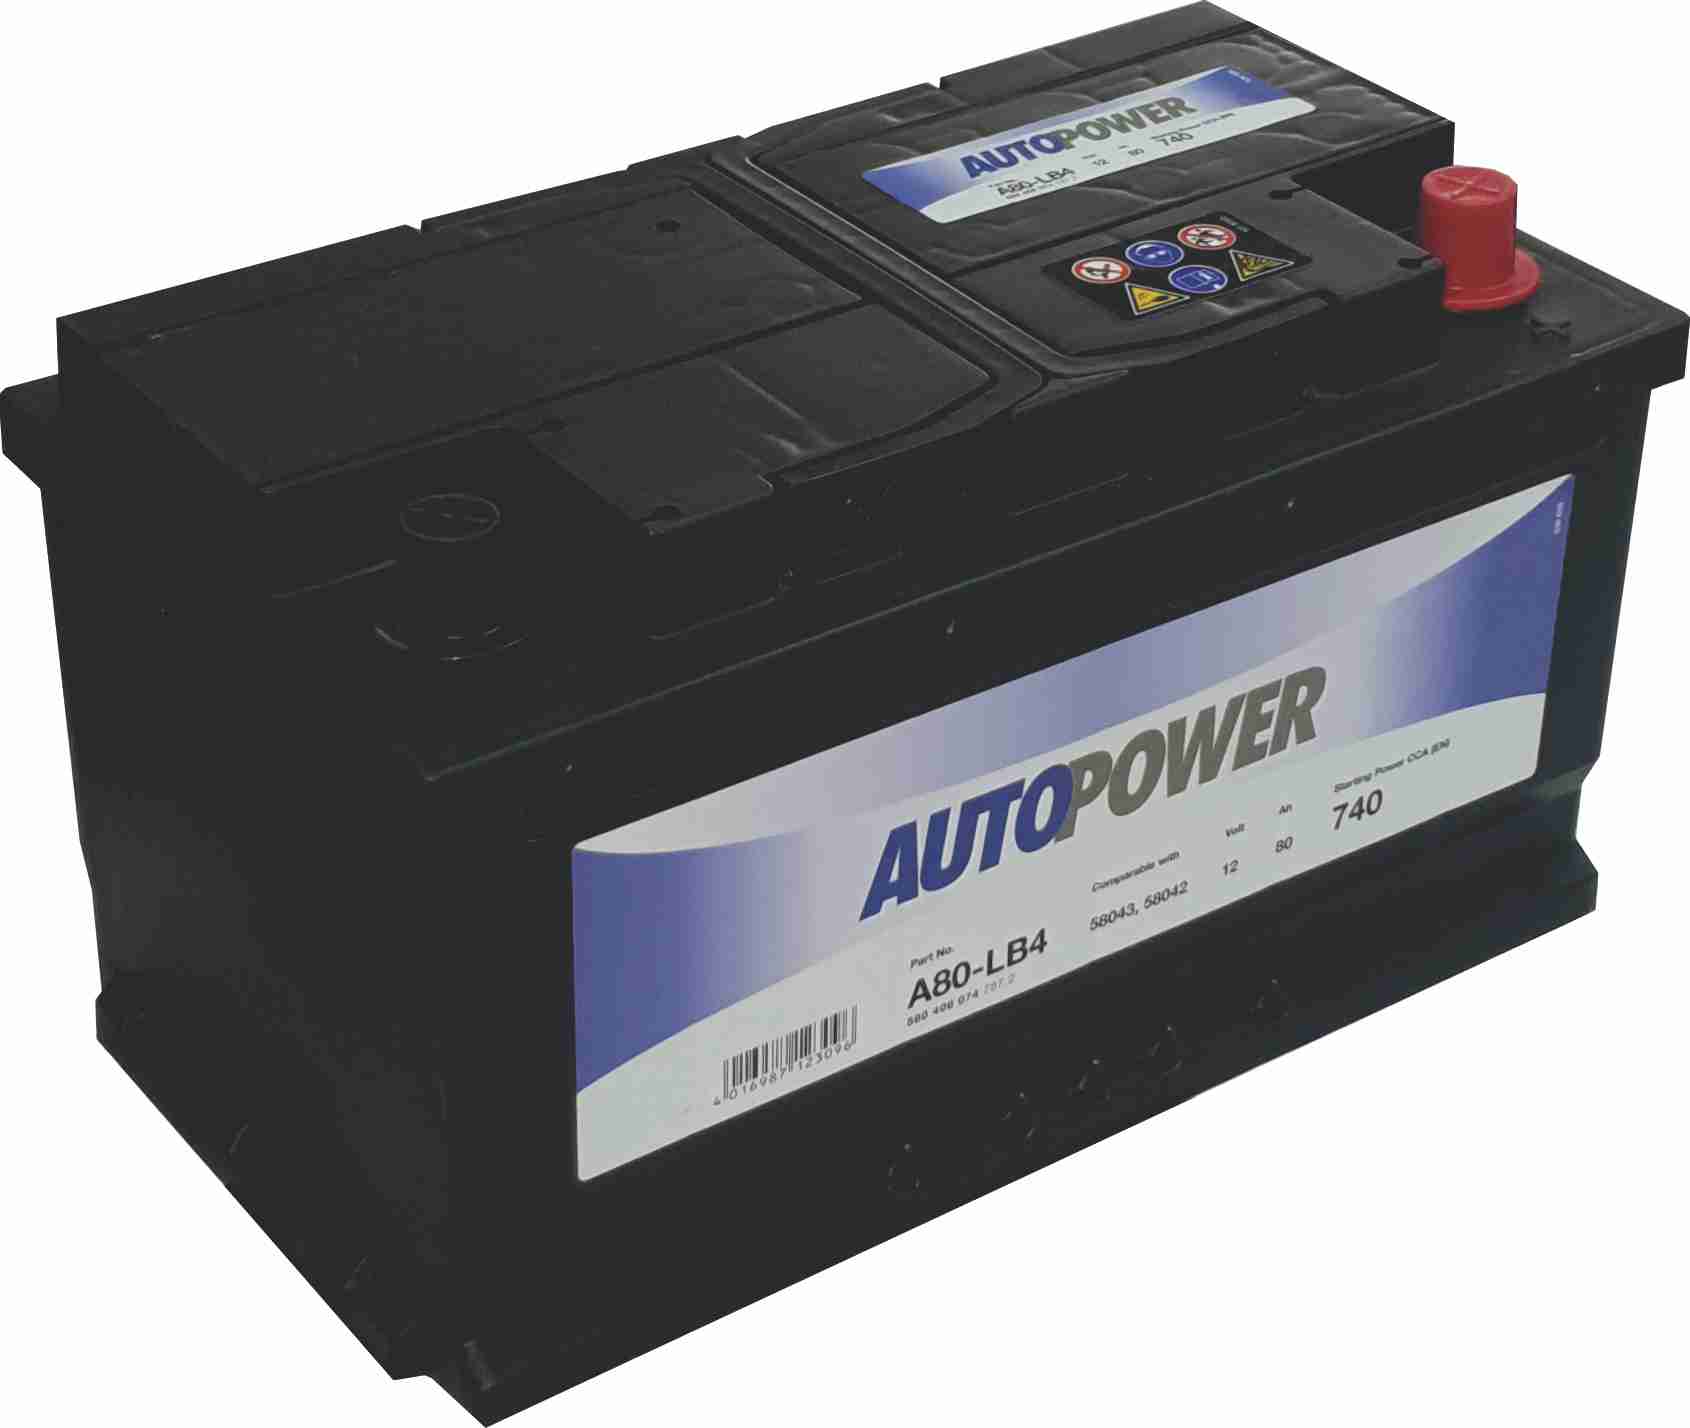 Auto Power A80-Lb3